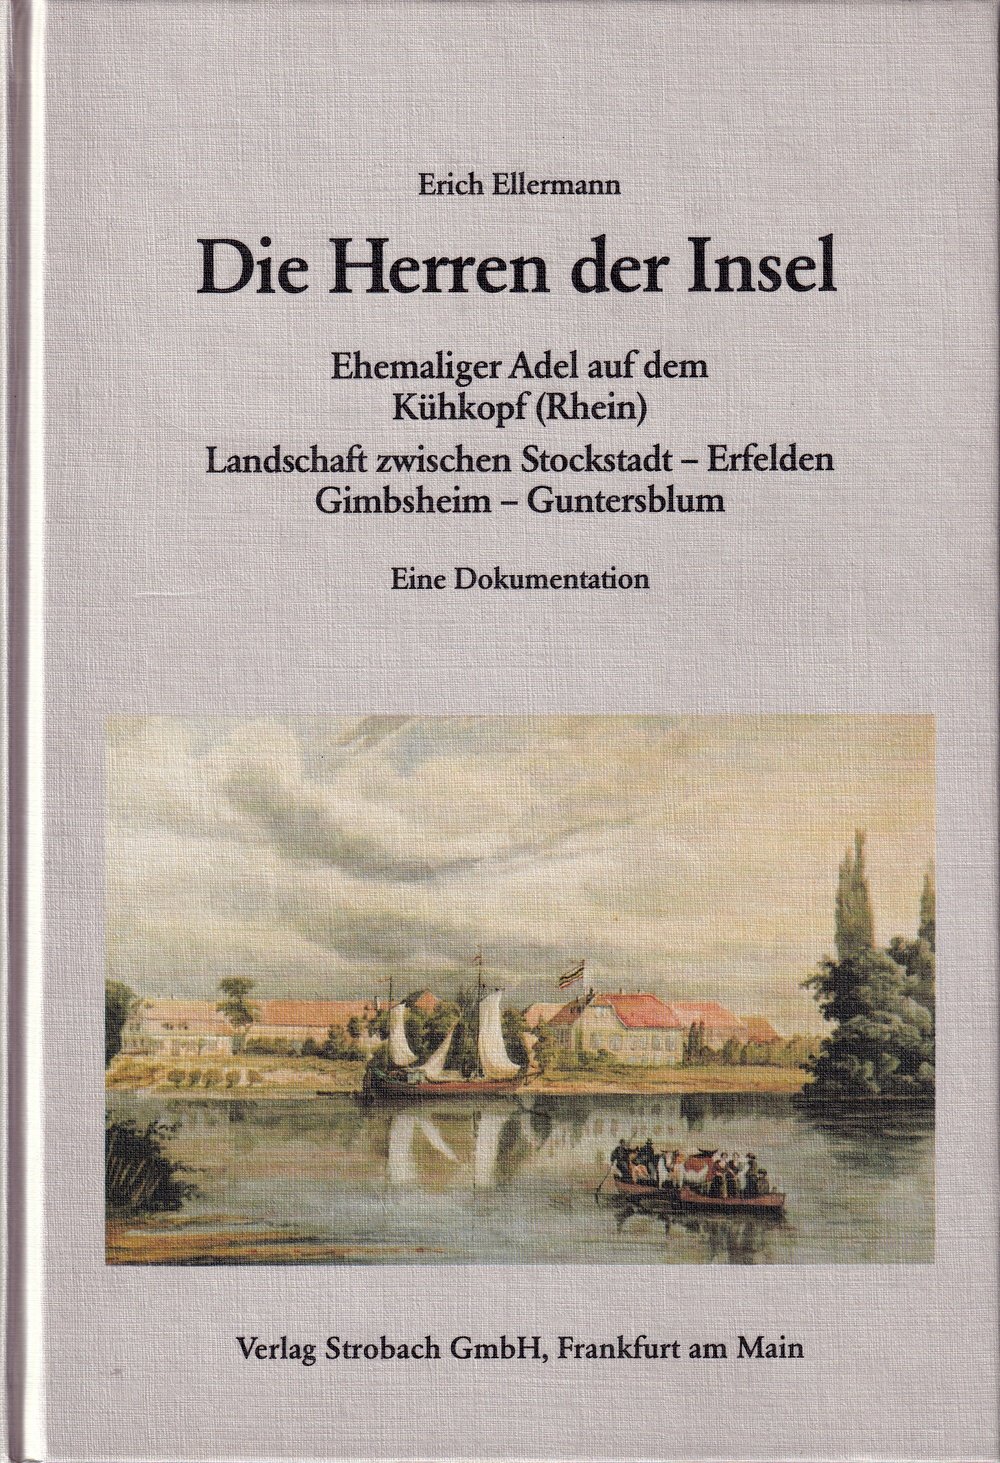 Die Herren der Insel : ehemaliger Adel auf dem Kühkopf (Rhein) (Kulturverein Guntersblum CC BY-NC-SA)